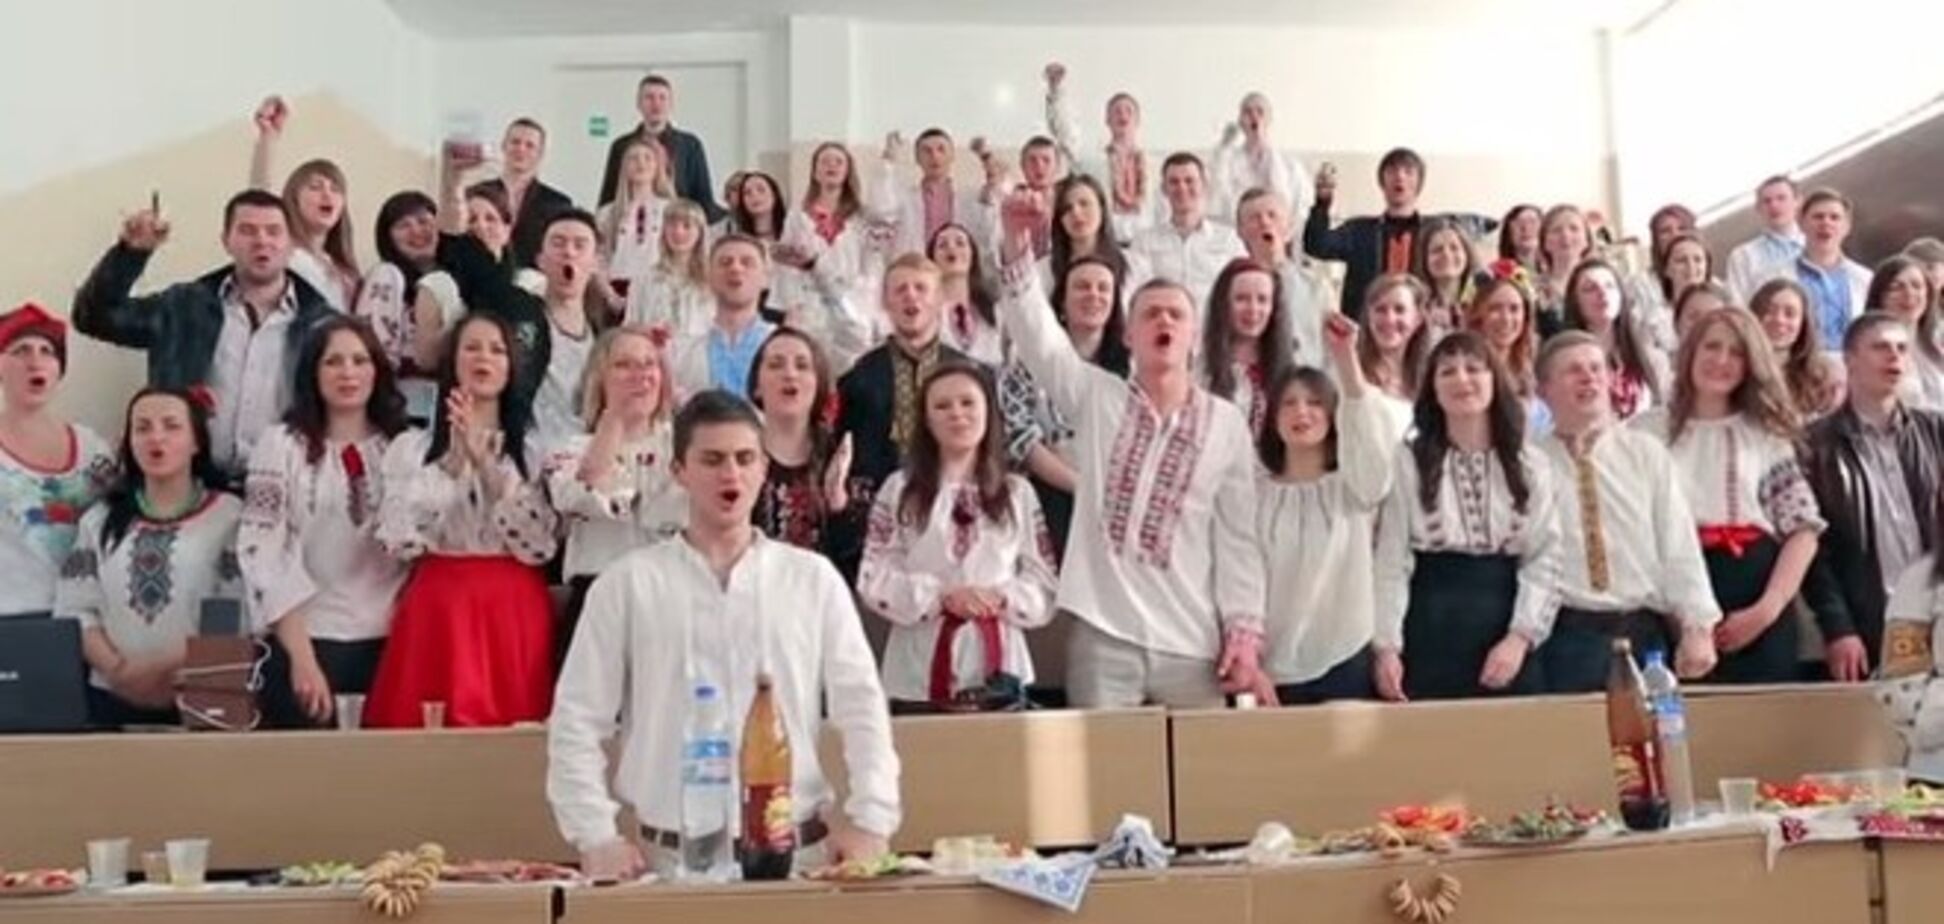 Украинские студенты перепели мегахит ультрас о Путине. Видеофакт